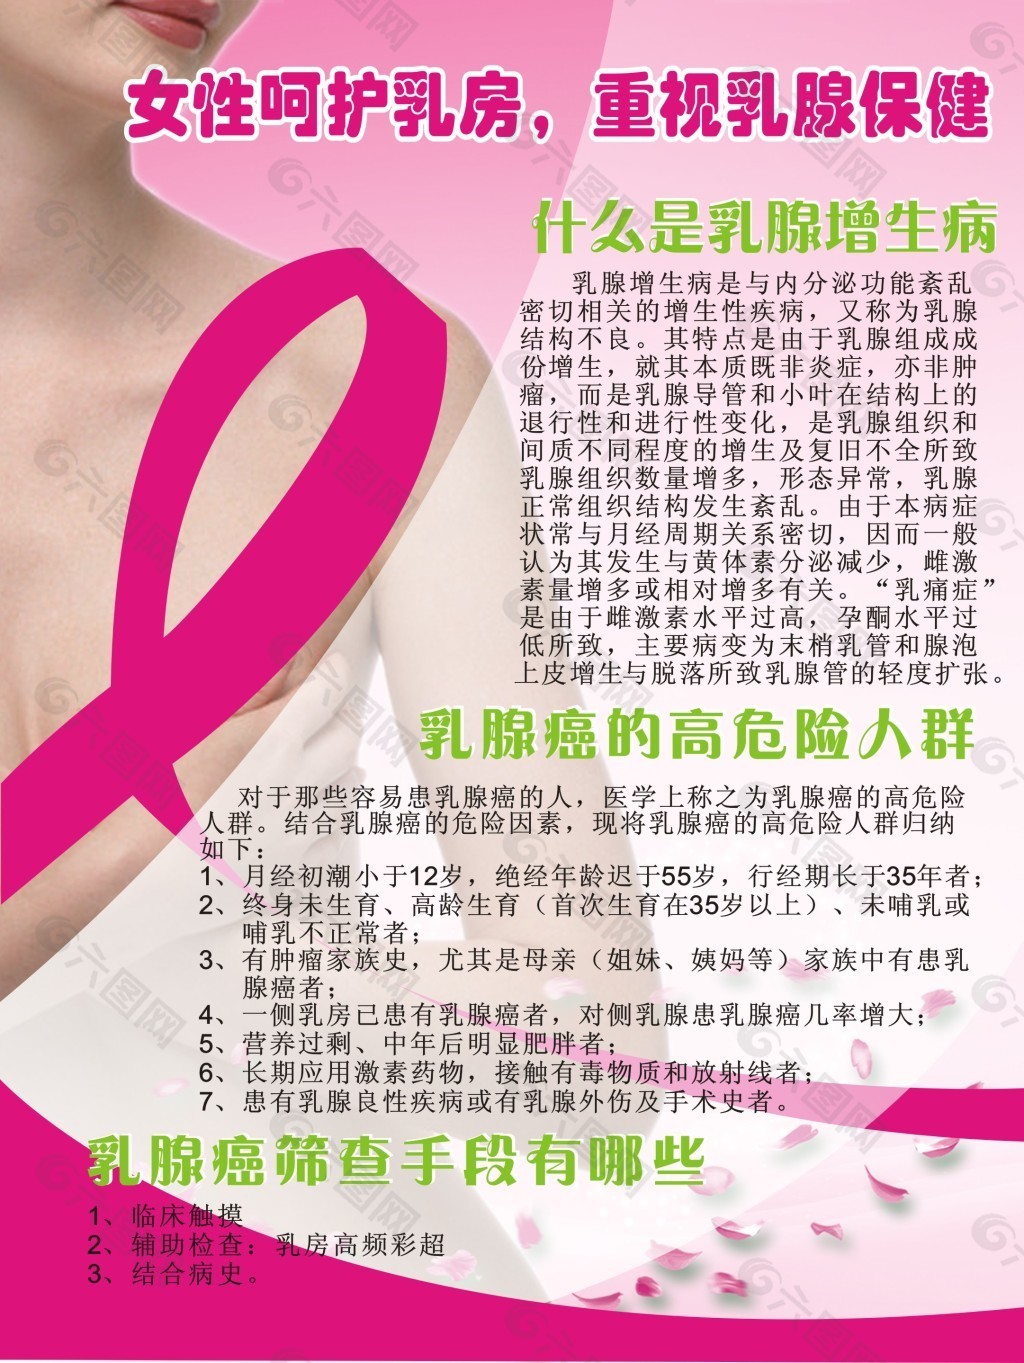 Outubro Rosa promove conscientização sobre o câncer de mama ...